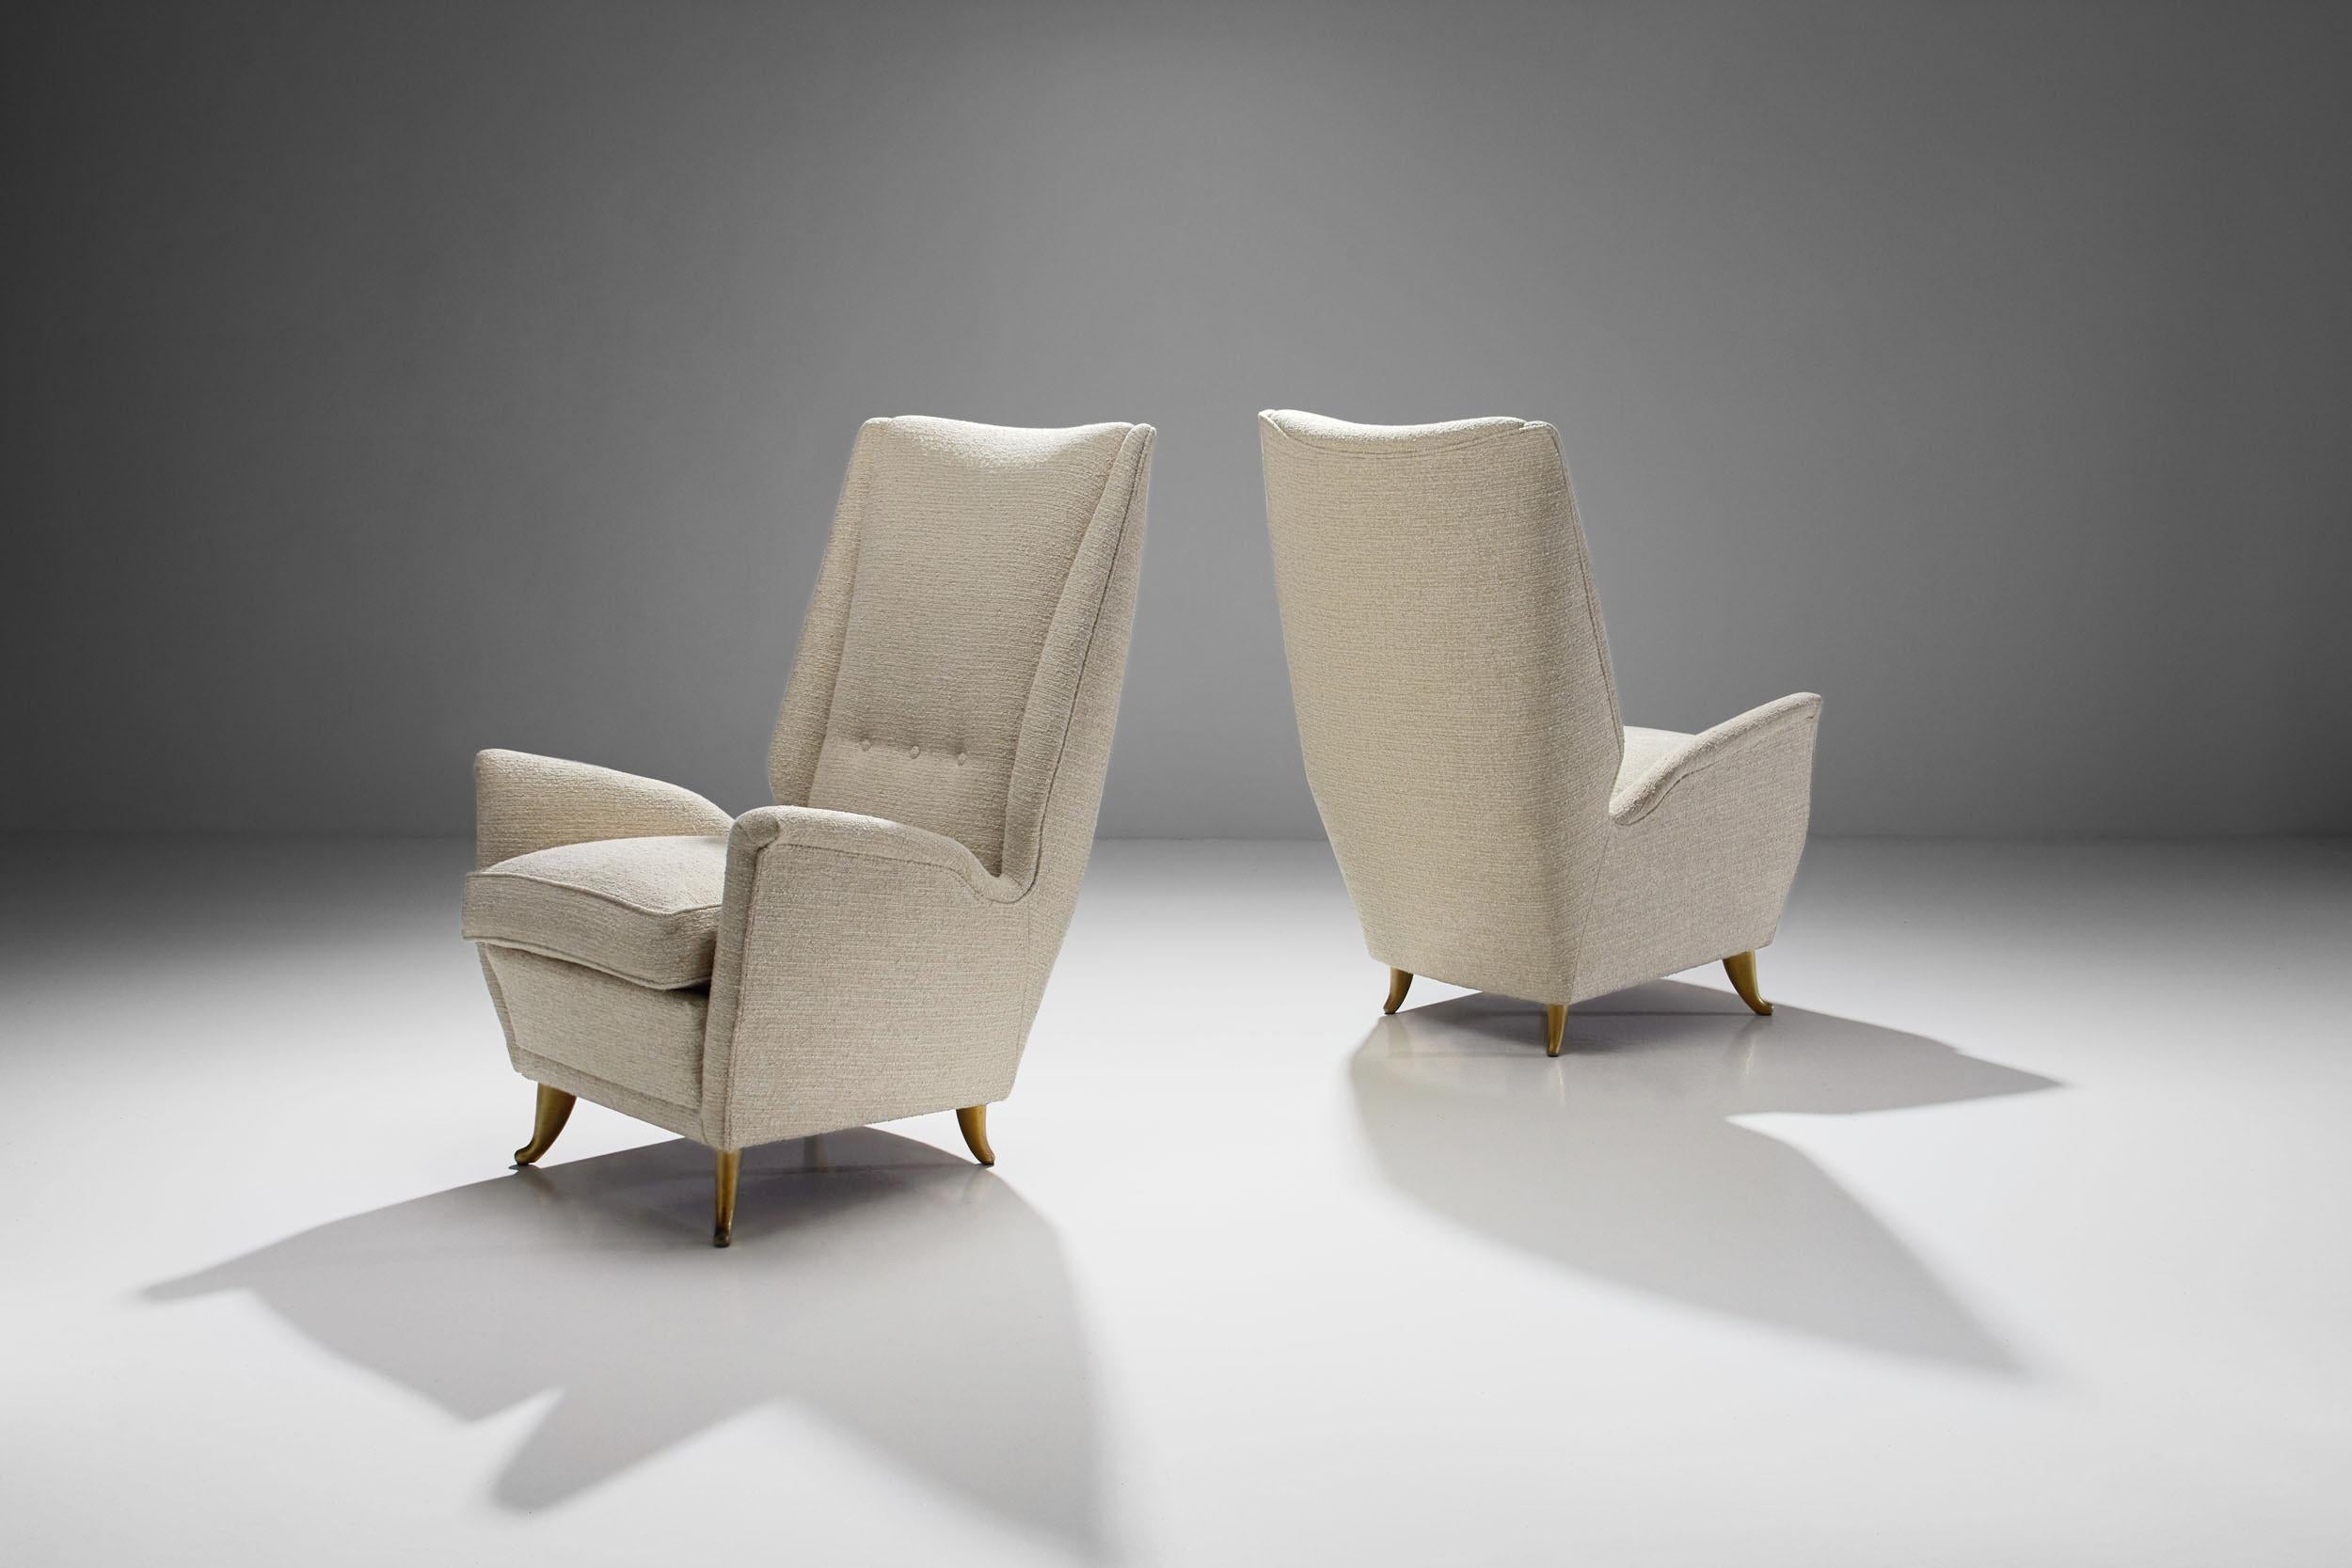 Cette élégante paire de chaises longues est attribuée au designer italien Gio Ponti et a été produite par Design/One en Italie dans les années 1950. Plusieurs des dessins de Ponti avaient été fabriqués par la société ISA à la fin des années 1940 et